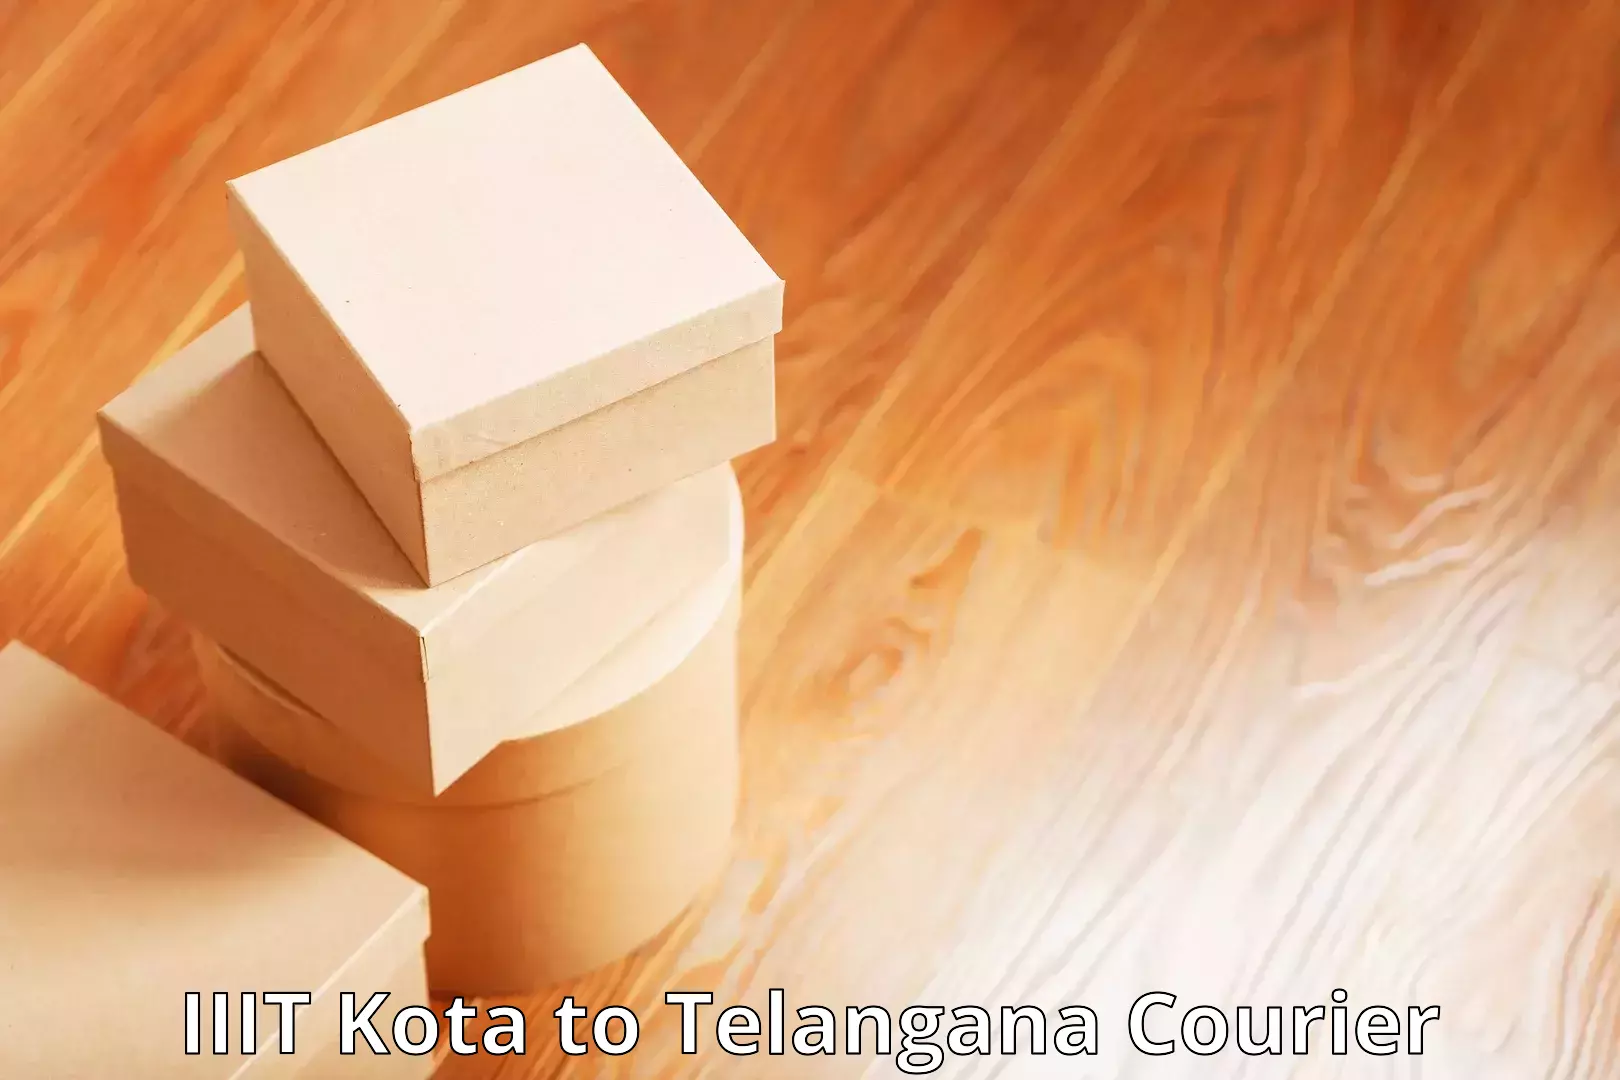 Custom courier packaging IIIT Kota to Alair